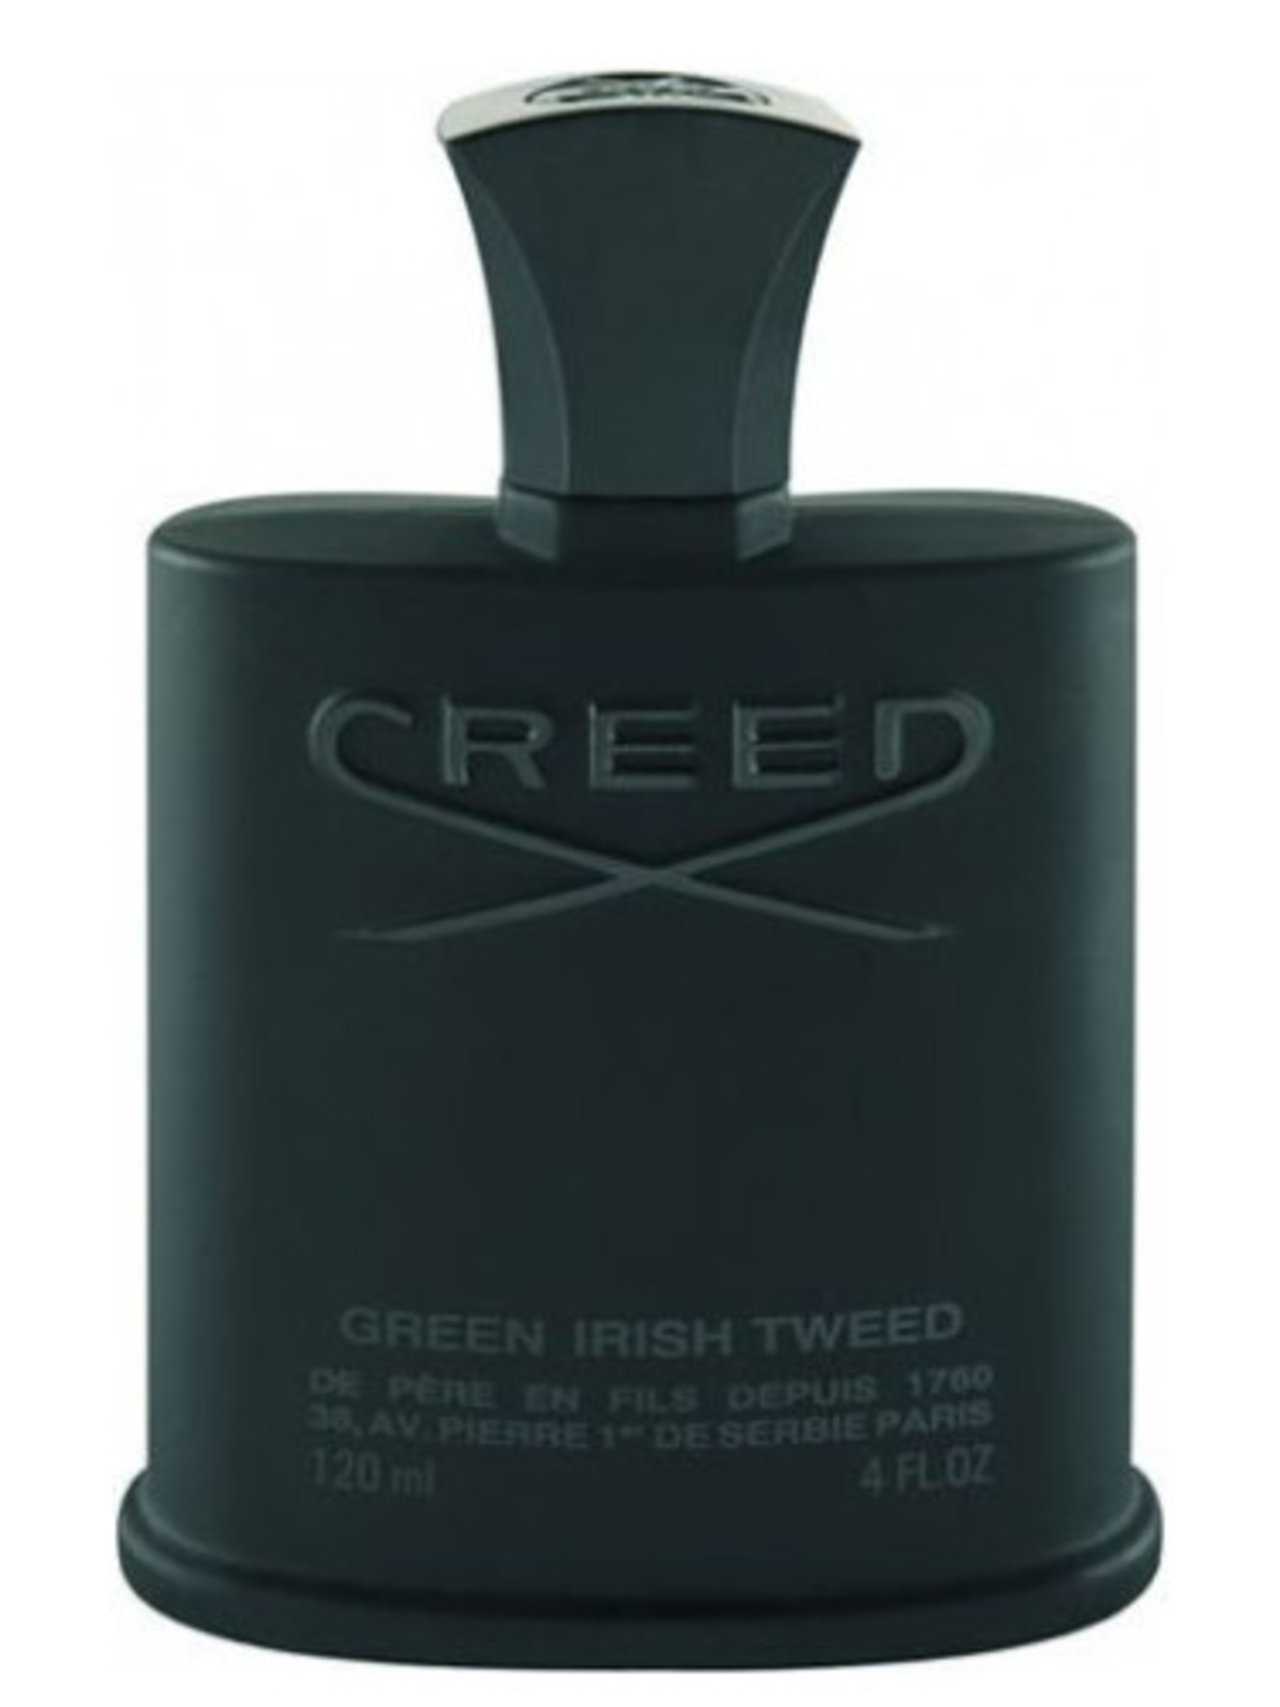 Мужской парфюм зеленый. Creed Green Irish Tweed 120 ml. Green Irish Tweed Creed 100 мл. Духи Крид Грин Ириш твид. Green Irish Tweed Creed 30 мл.